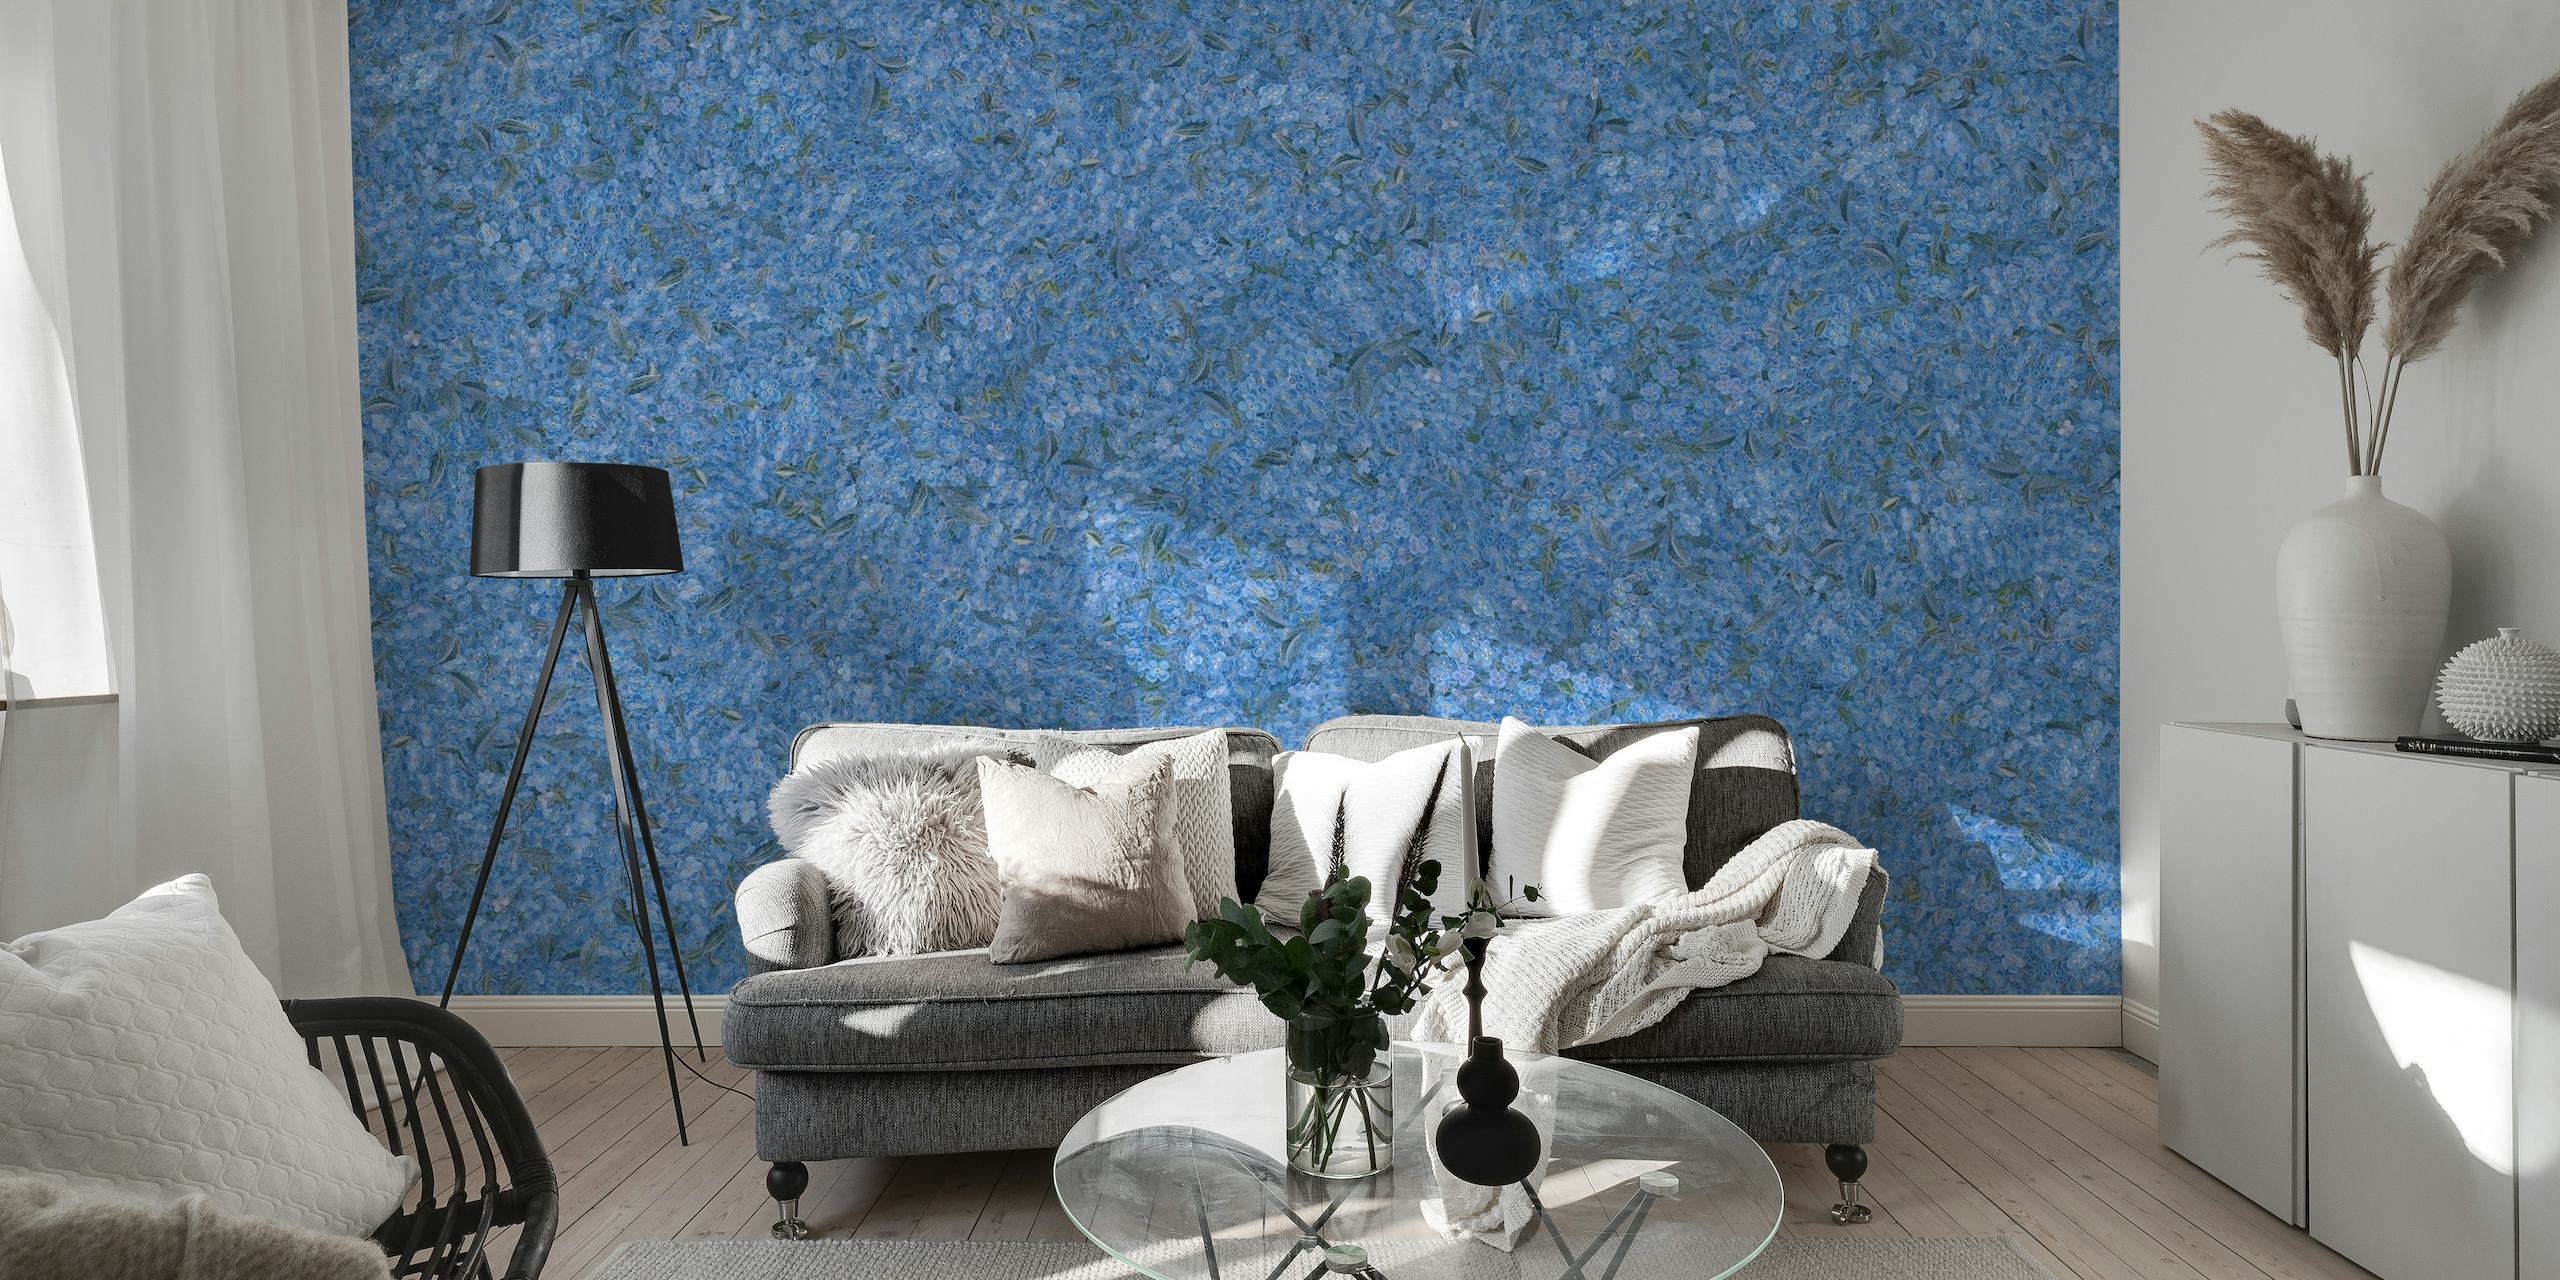 Flores miosótis estilo bordado em um mural de parede azul profundo